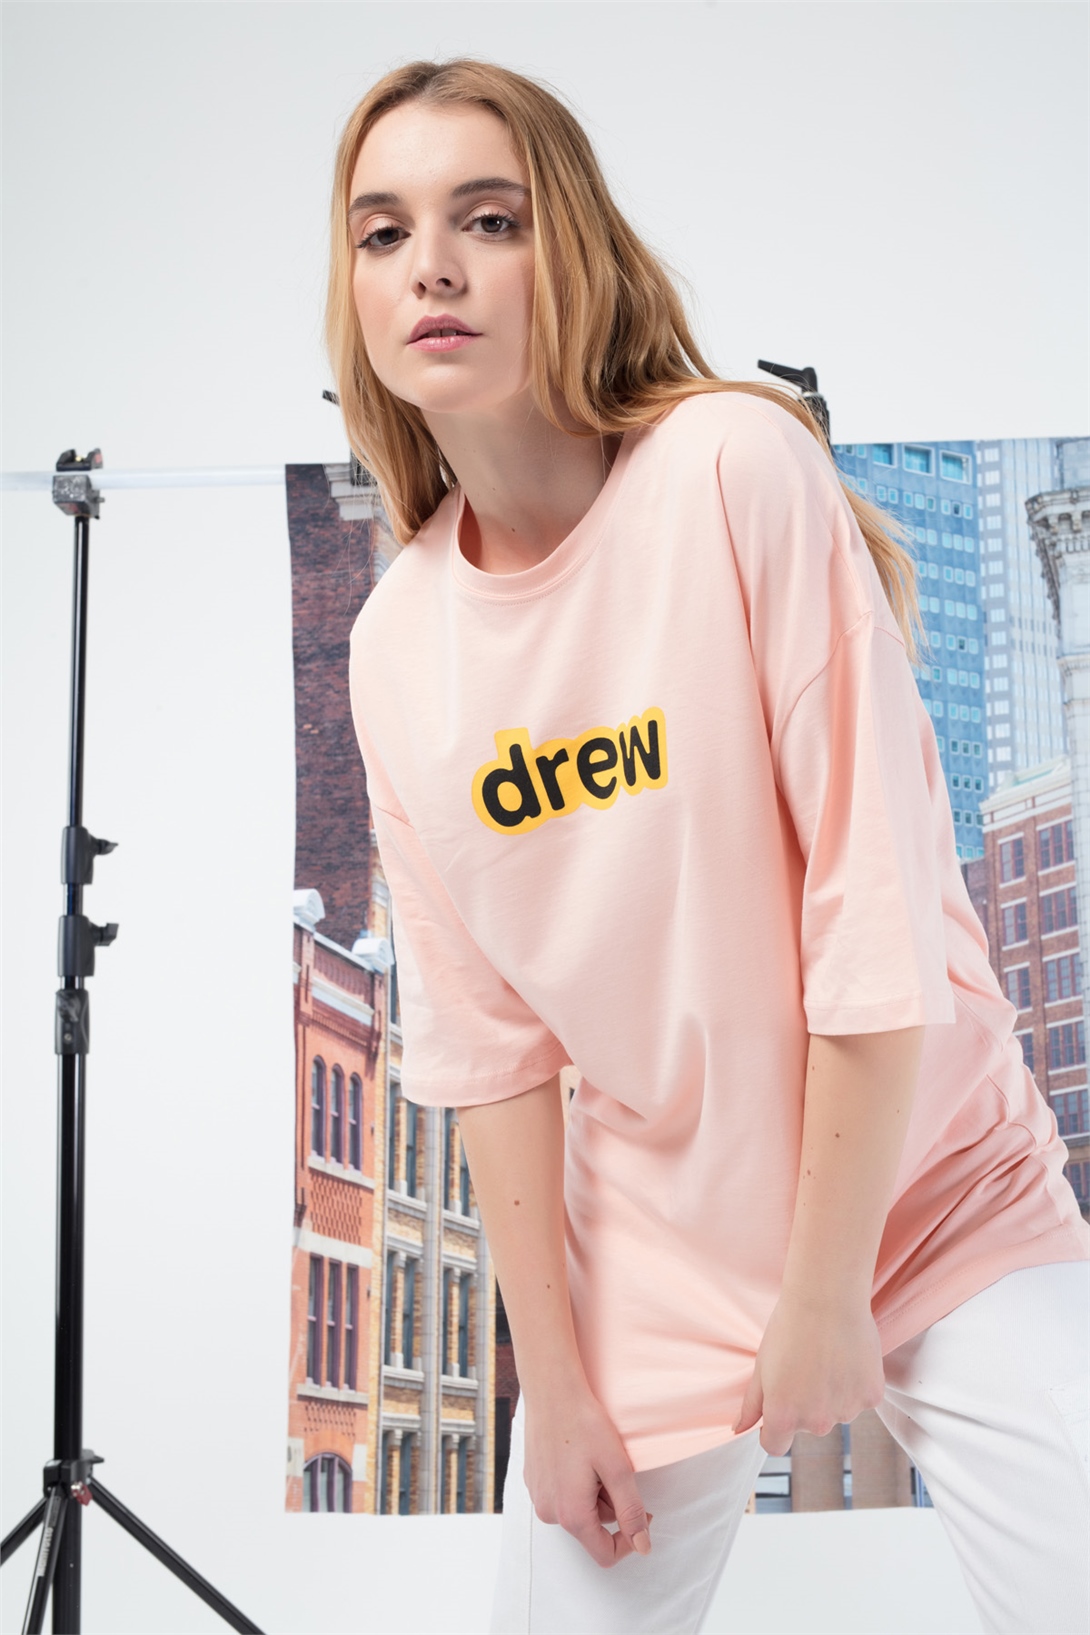 Trendiz Kadın Drew yazı Tshirt Açık Pembe